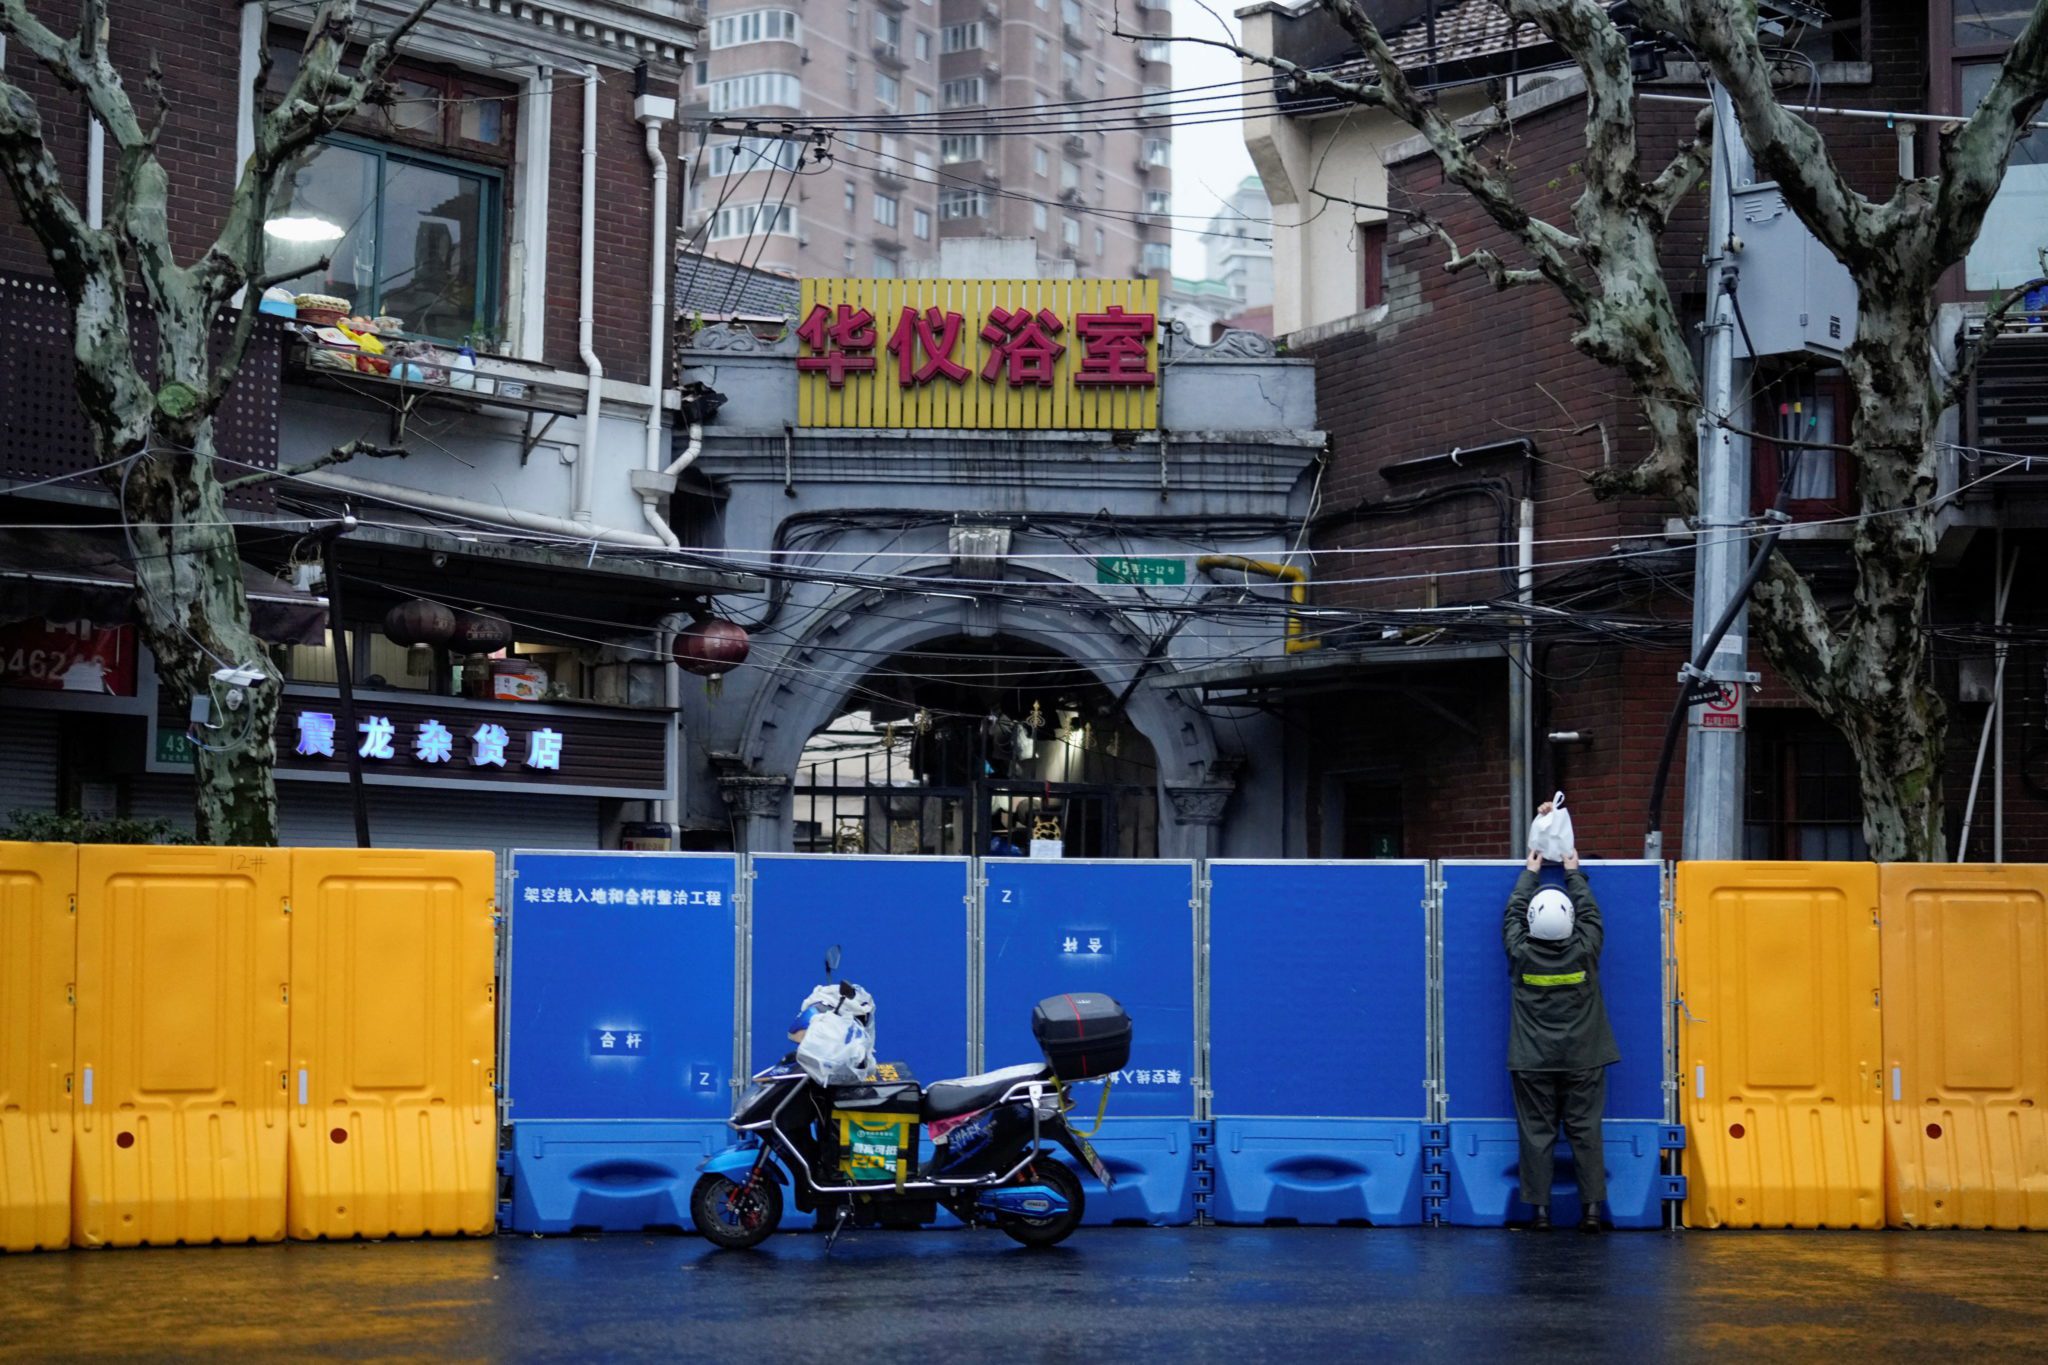 Entregador passa mercadorias para uma pessoa sobre as barreiras de uma área em lockdown em meio à pandemia de Covid-19 em Xangai